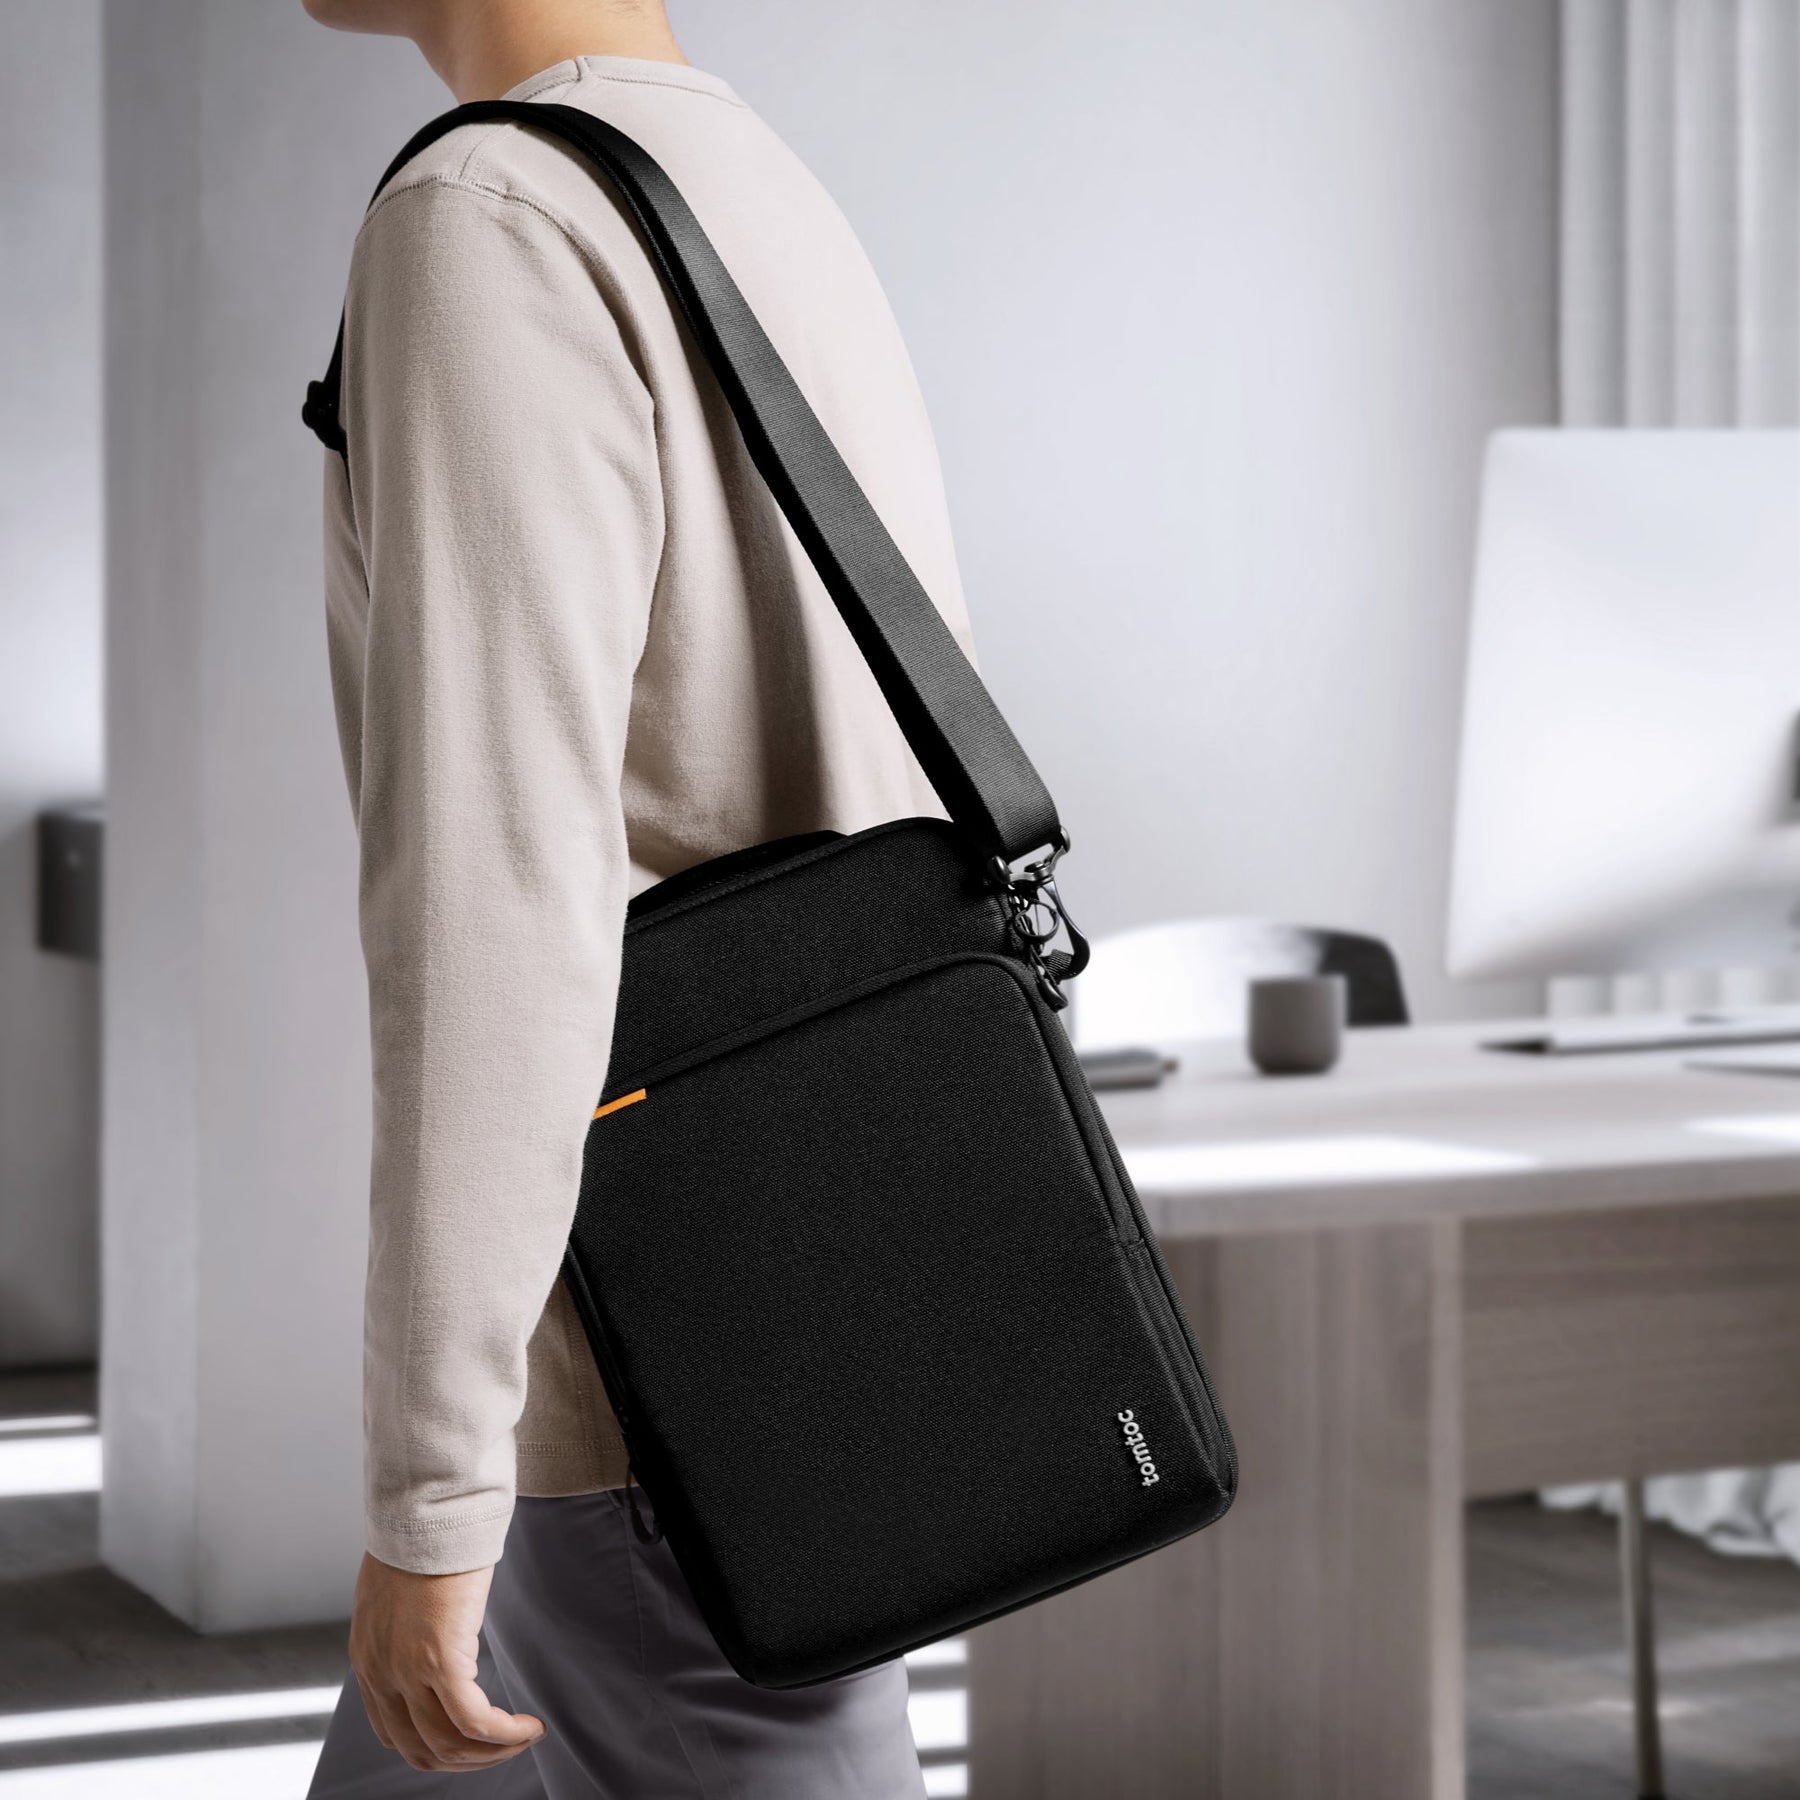 DefenderACE-H13 Laptop Shoulder Bag 13-inch | Black